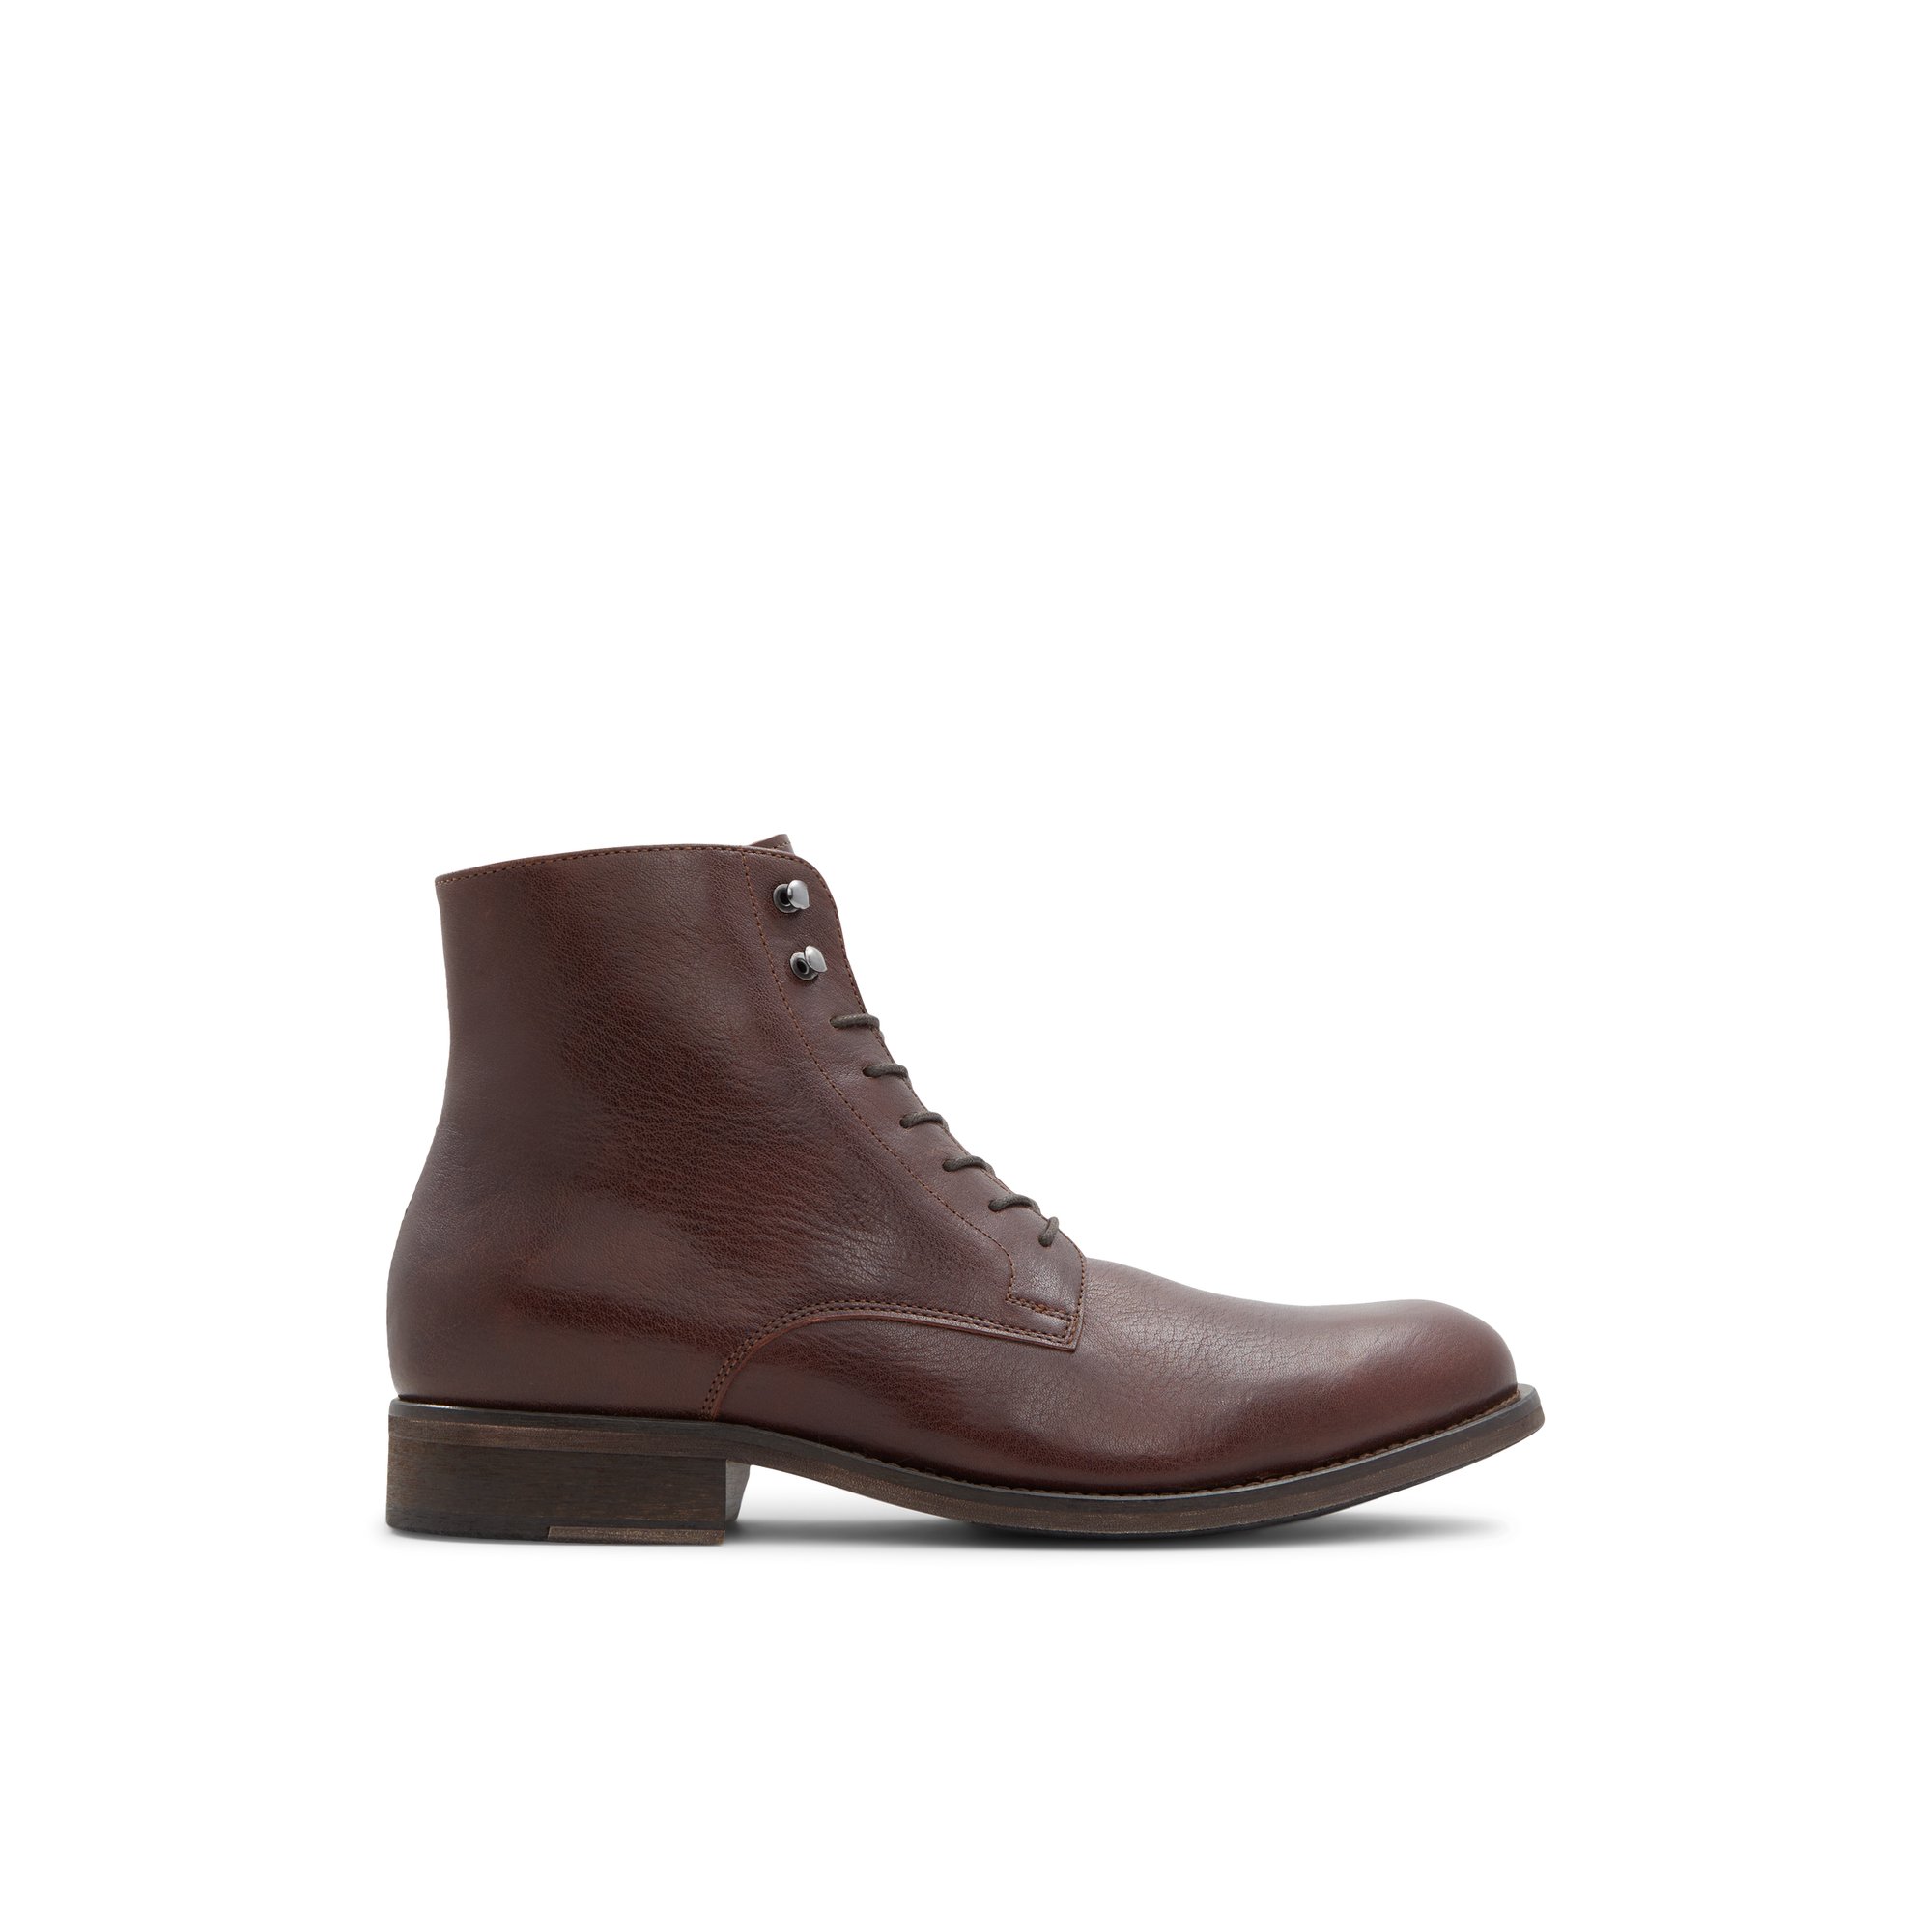 ALDO Region - Men's Boot - Brown